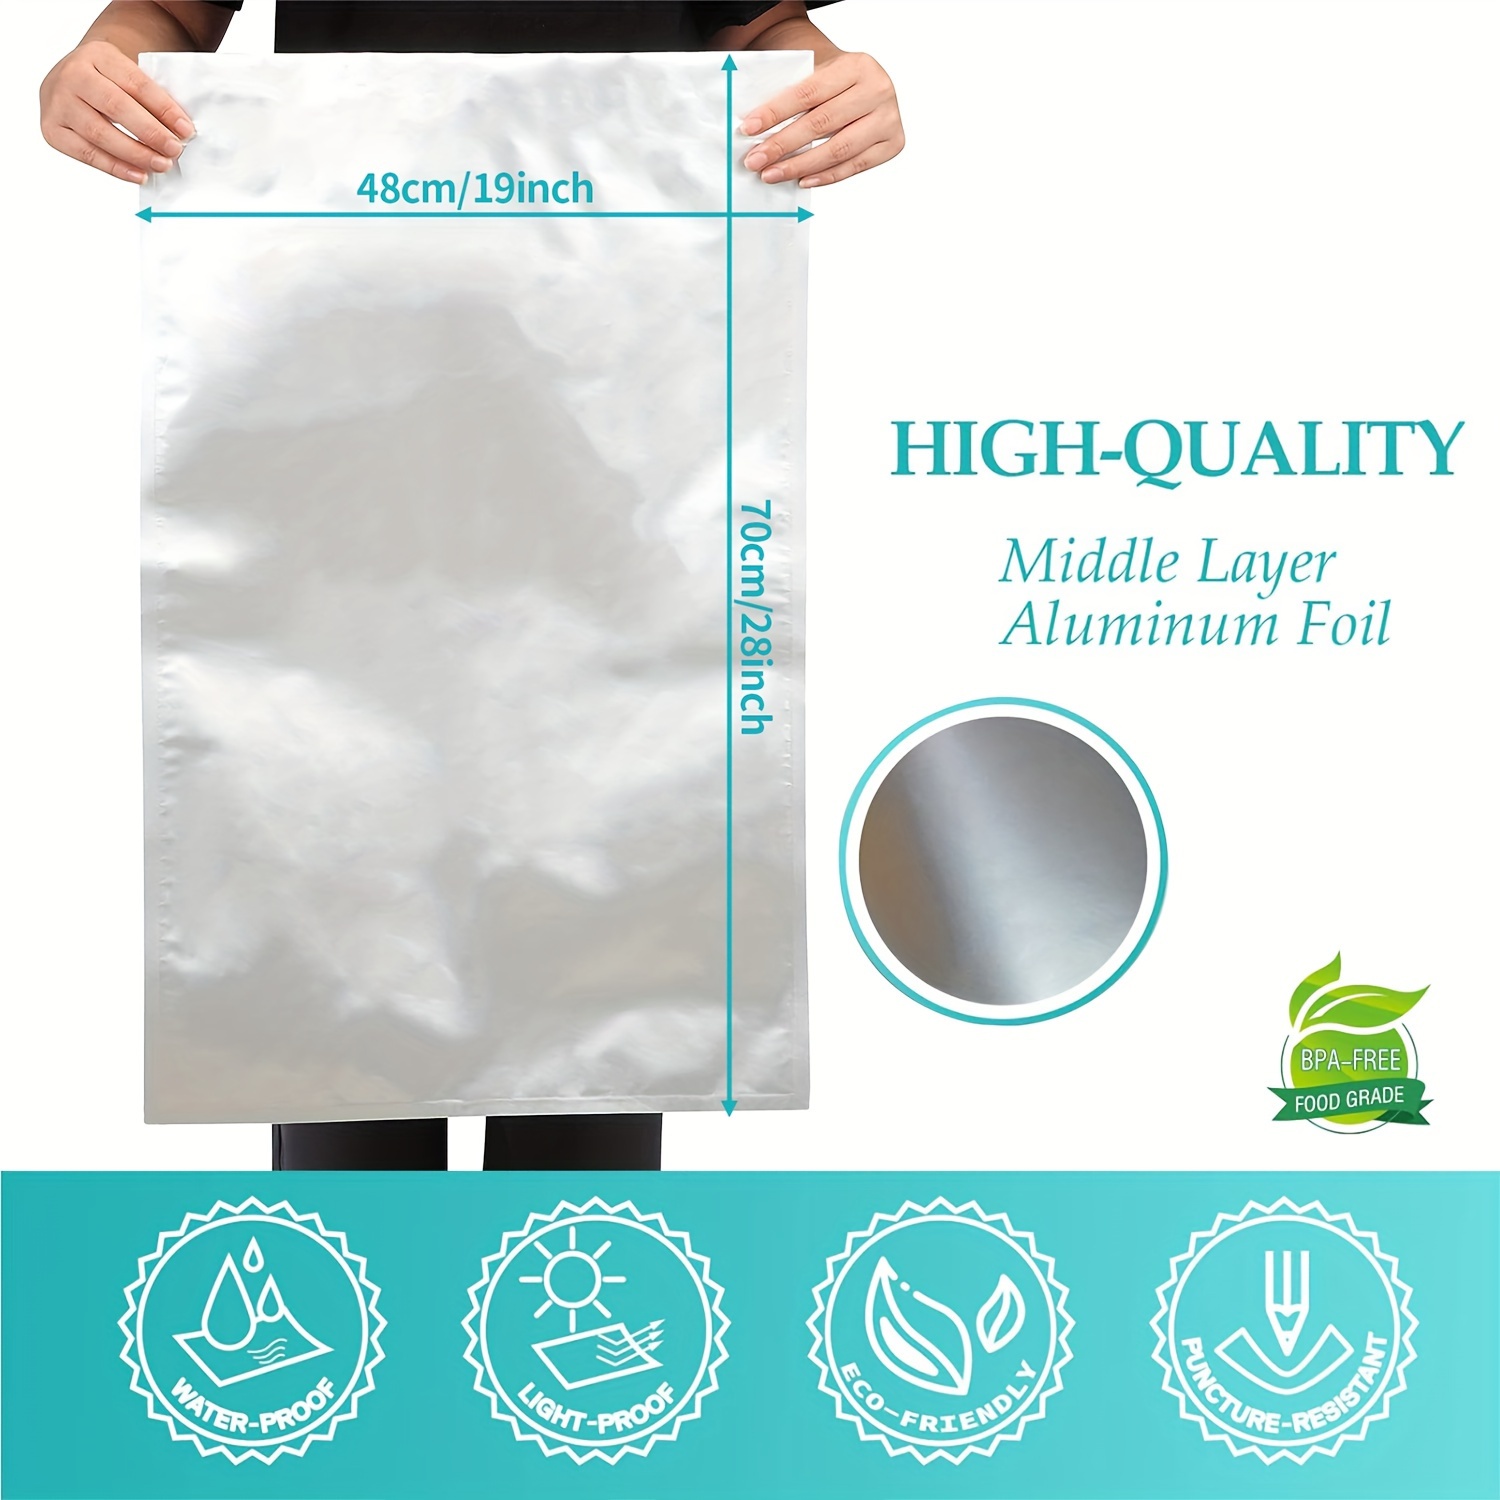 Bolsas herméticas de 9.19 x 13.46 x 5.99 cm, color blanco n.° 4, Mylar 3.54  g, para pastillas recetadas, frente transparente, bolsas de papel de